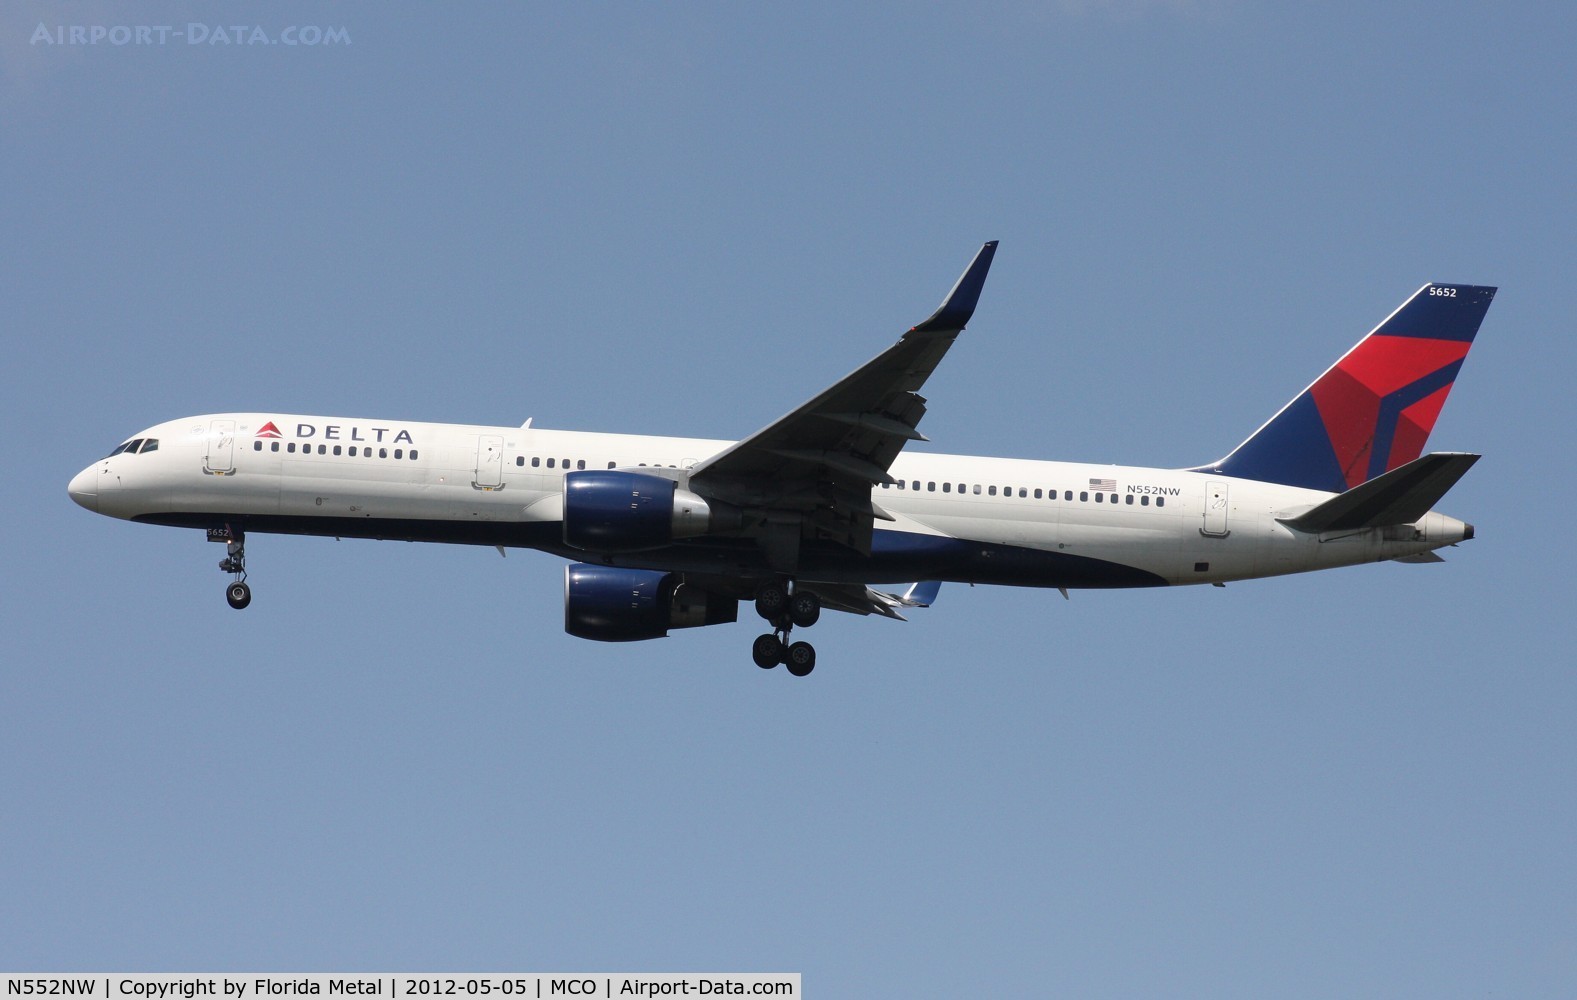 N552NW, 2001 Boeing 757-251 C/N 26499, Delta 757-200